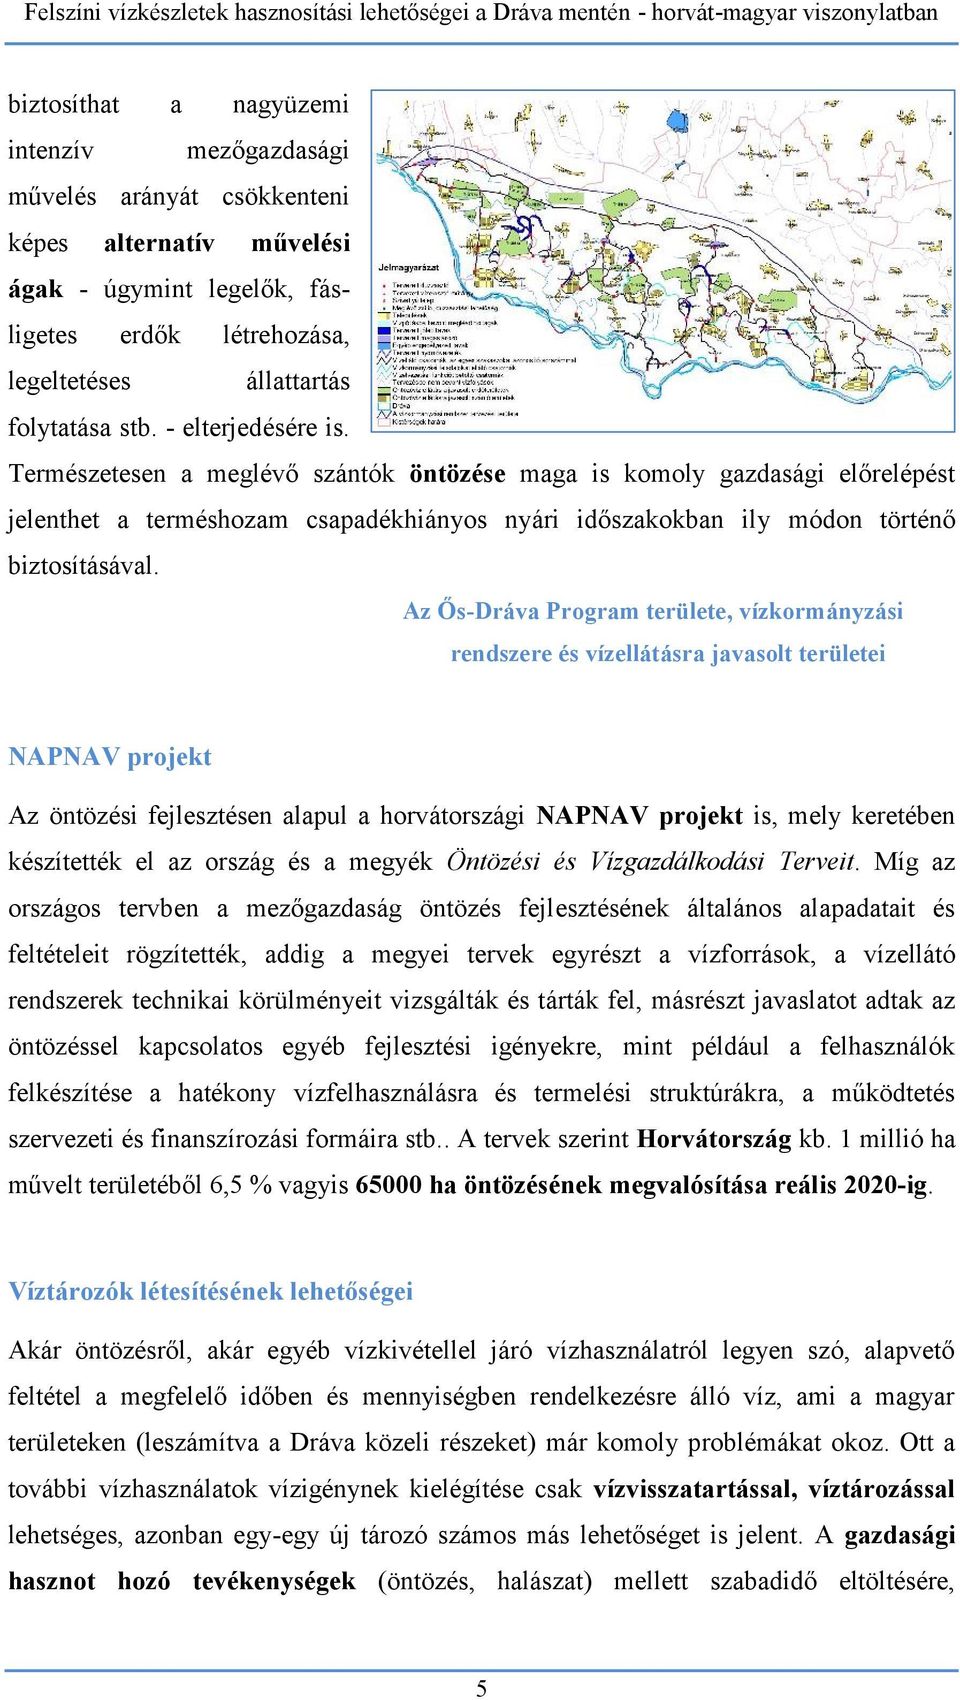 Az Ős-Dráva Program területe, vízkormányzási rendszere és vízellátásra javasolt területei NAPNAV projekt Az öntözési fejlesztésen alapul a horvátországi NAPNAV projekt is, mely keretében készítették